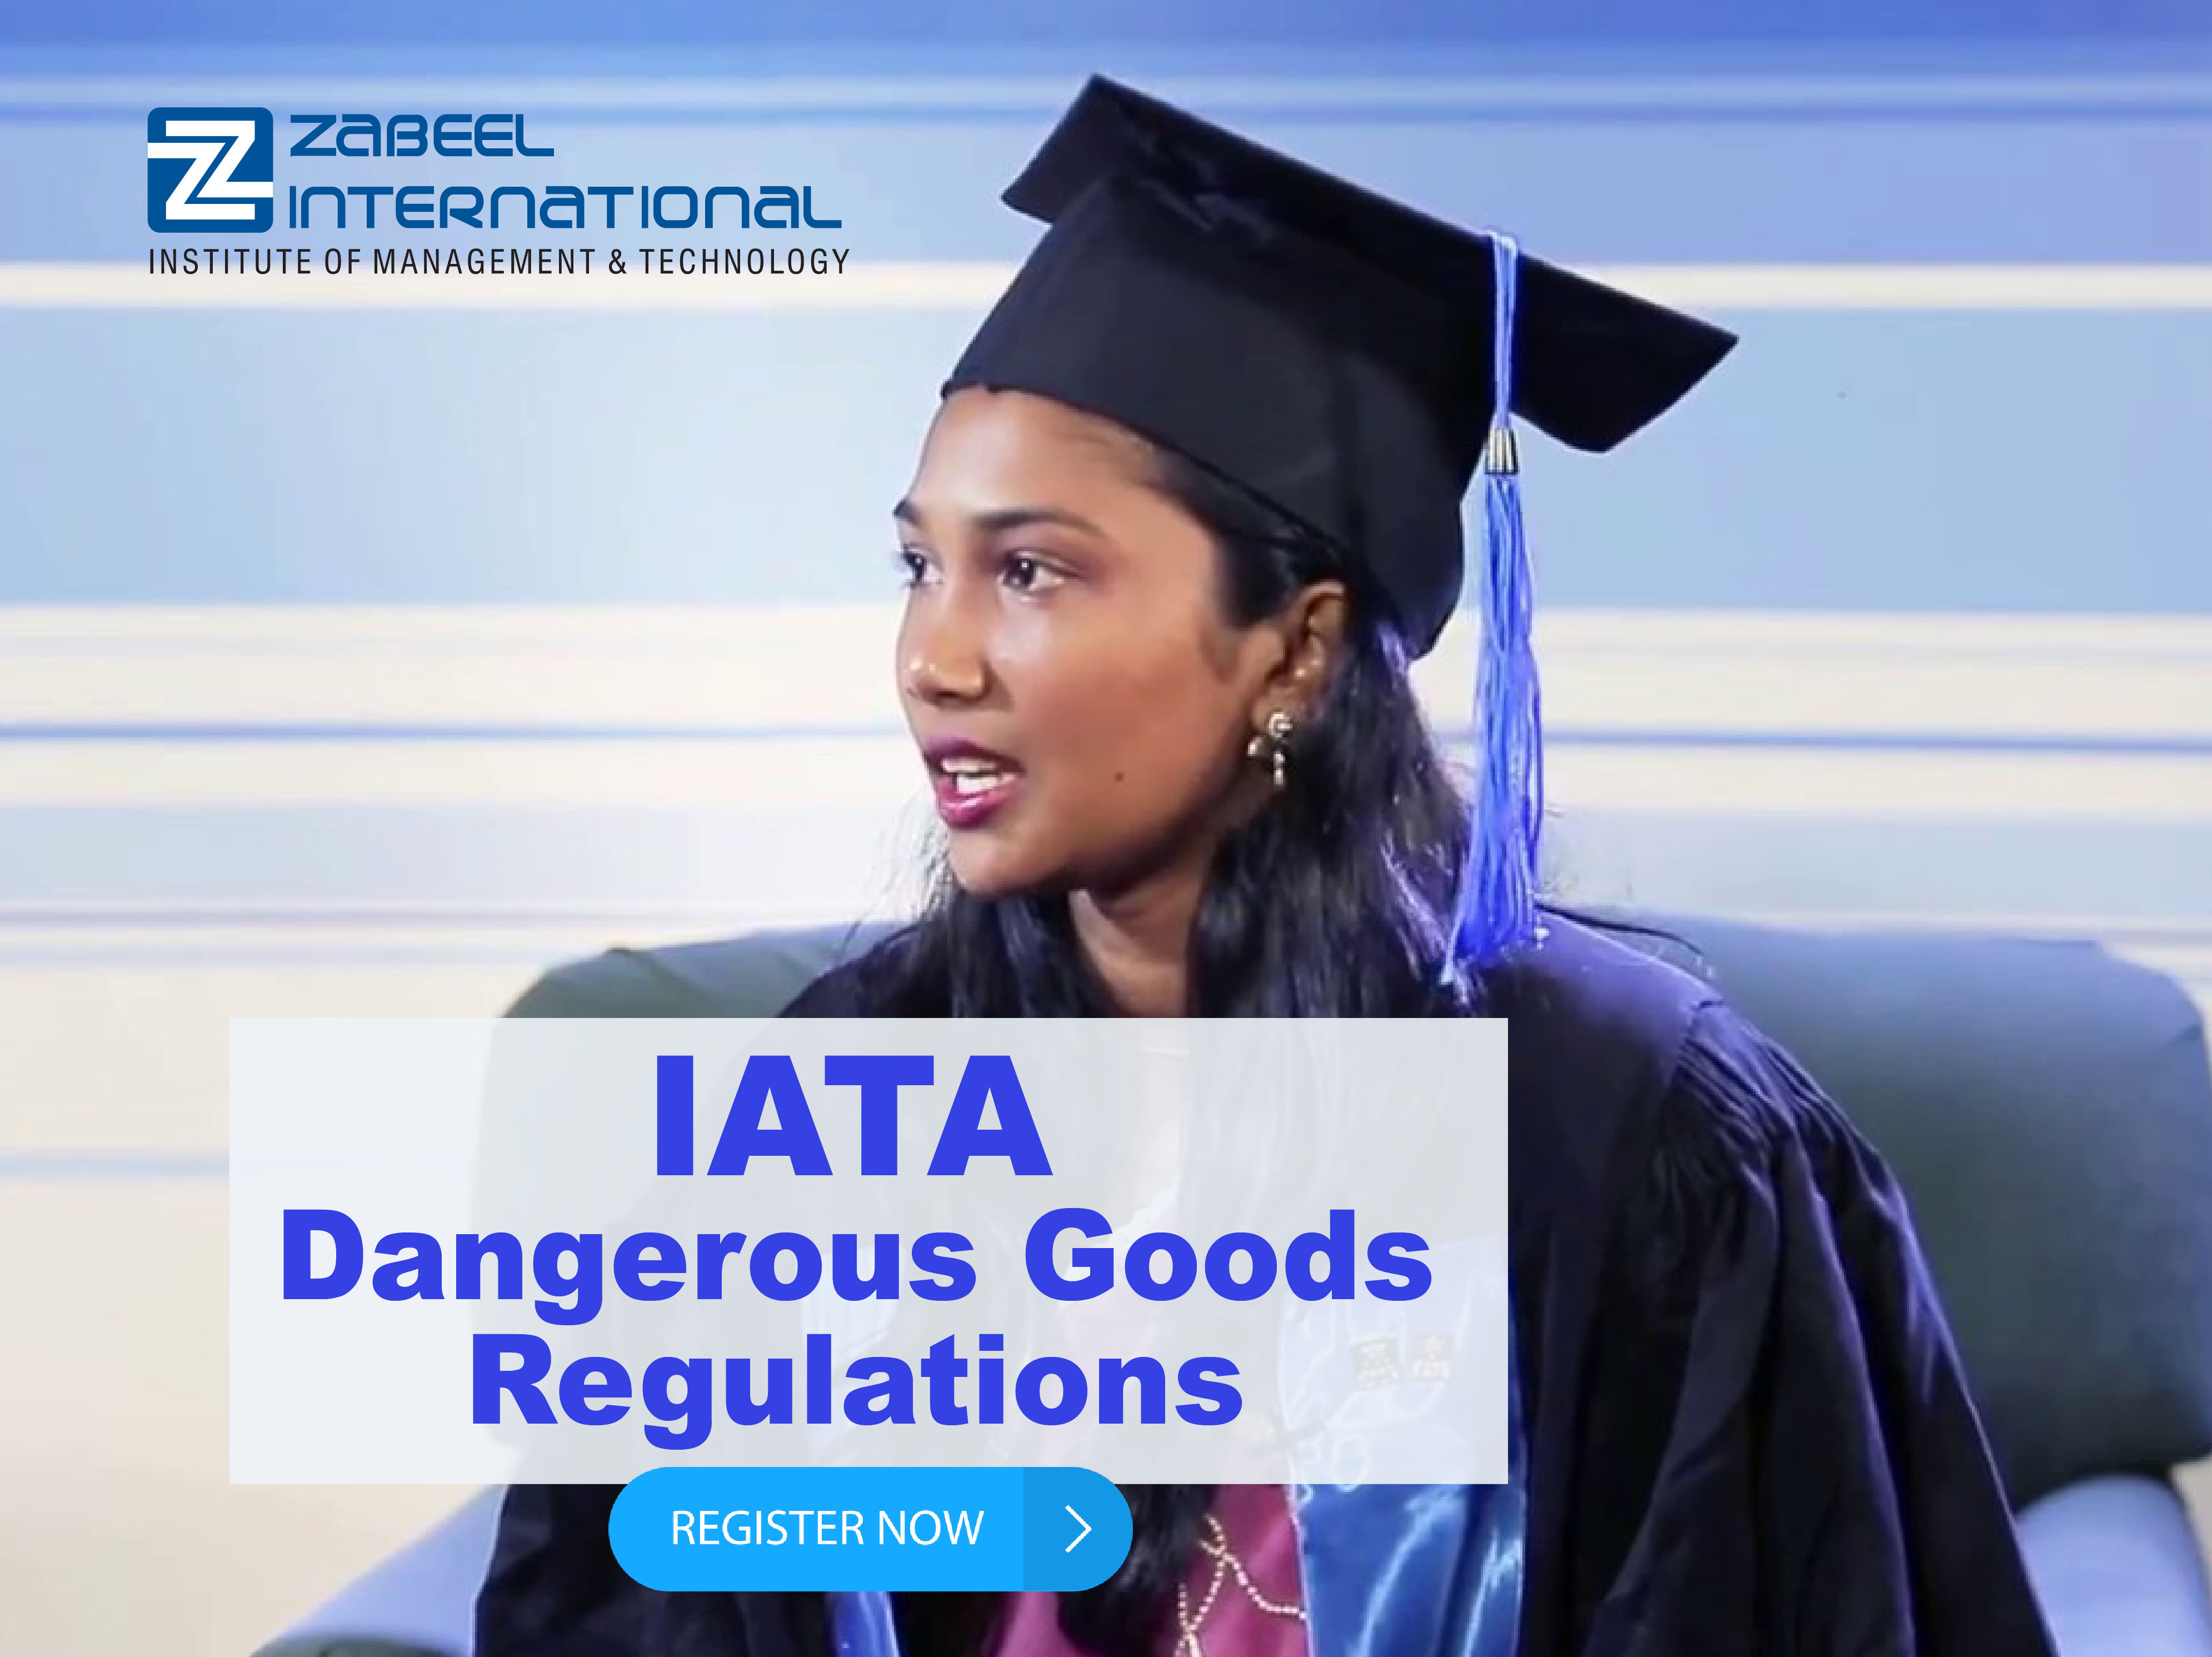 IATA Dangerous Goods Regulations Certification Training Course in Dubai, Dubai, United Arab Emirates